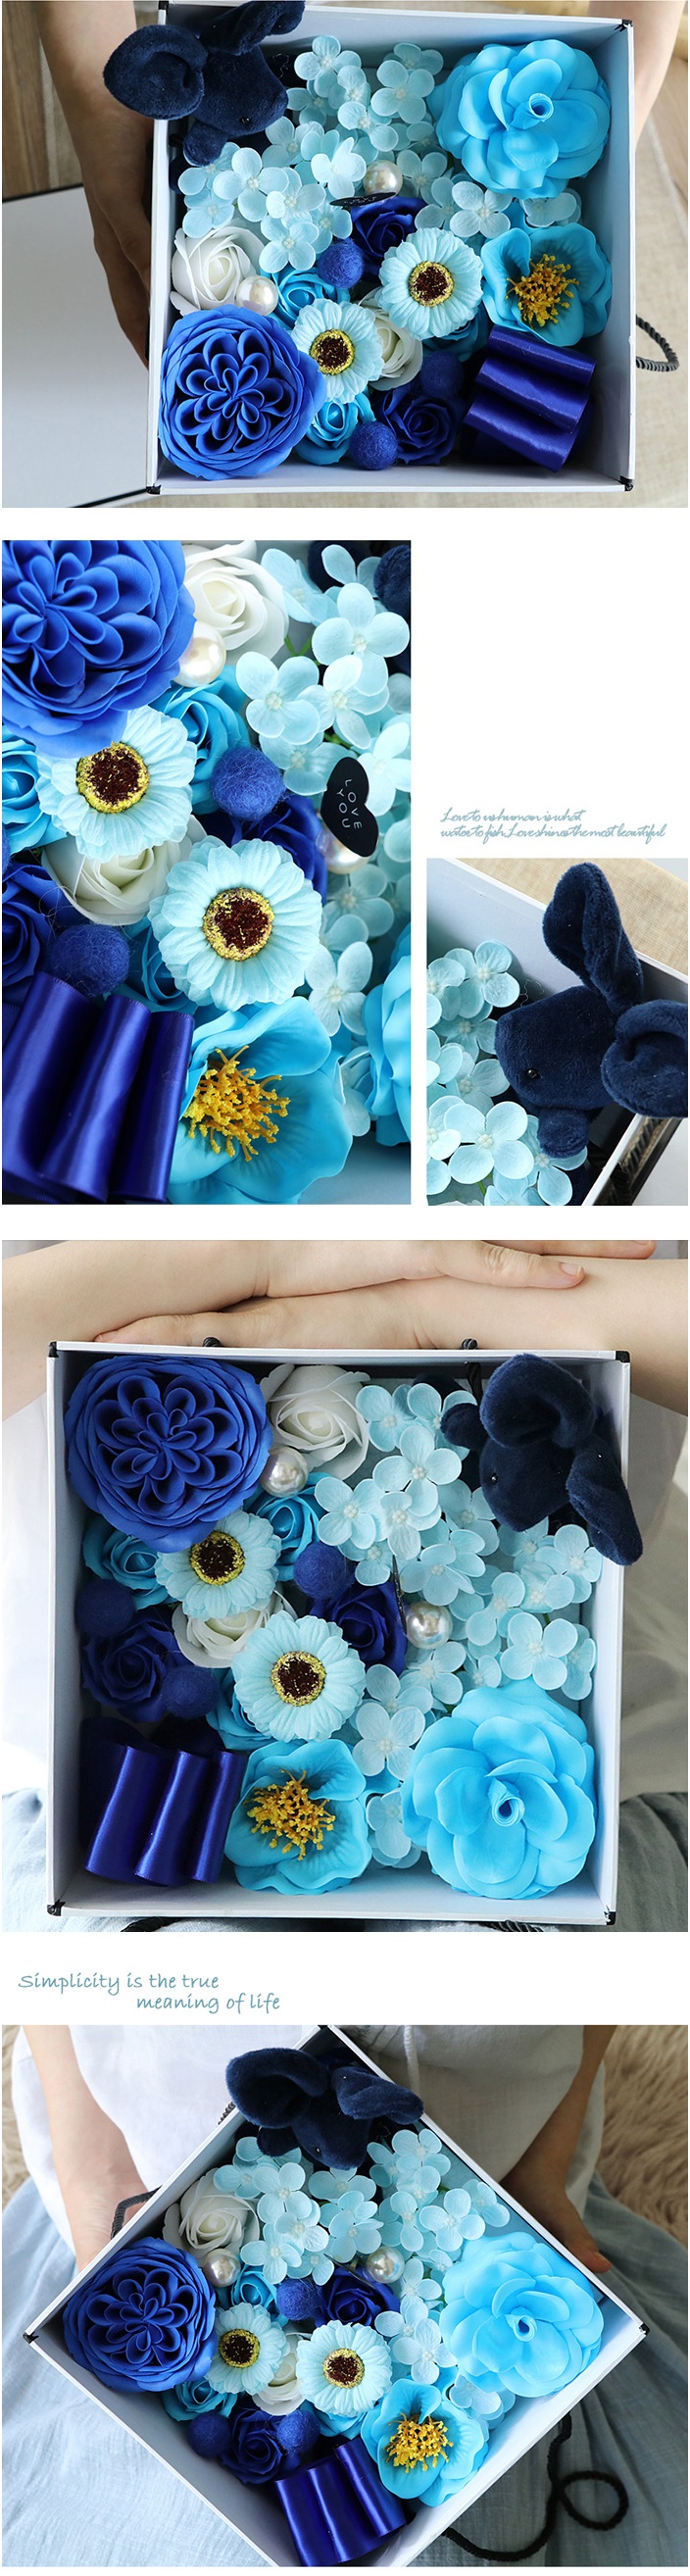 創意小物館 玫瑰花皂手提禮盒-藍小兔